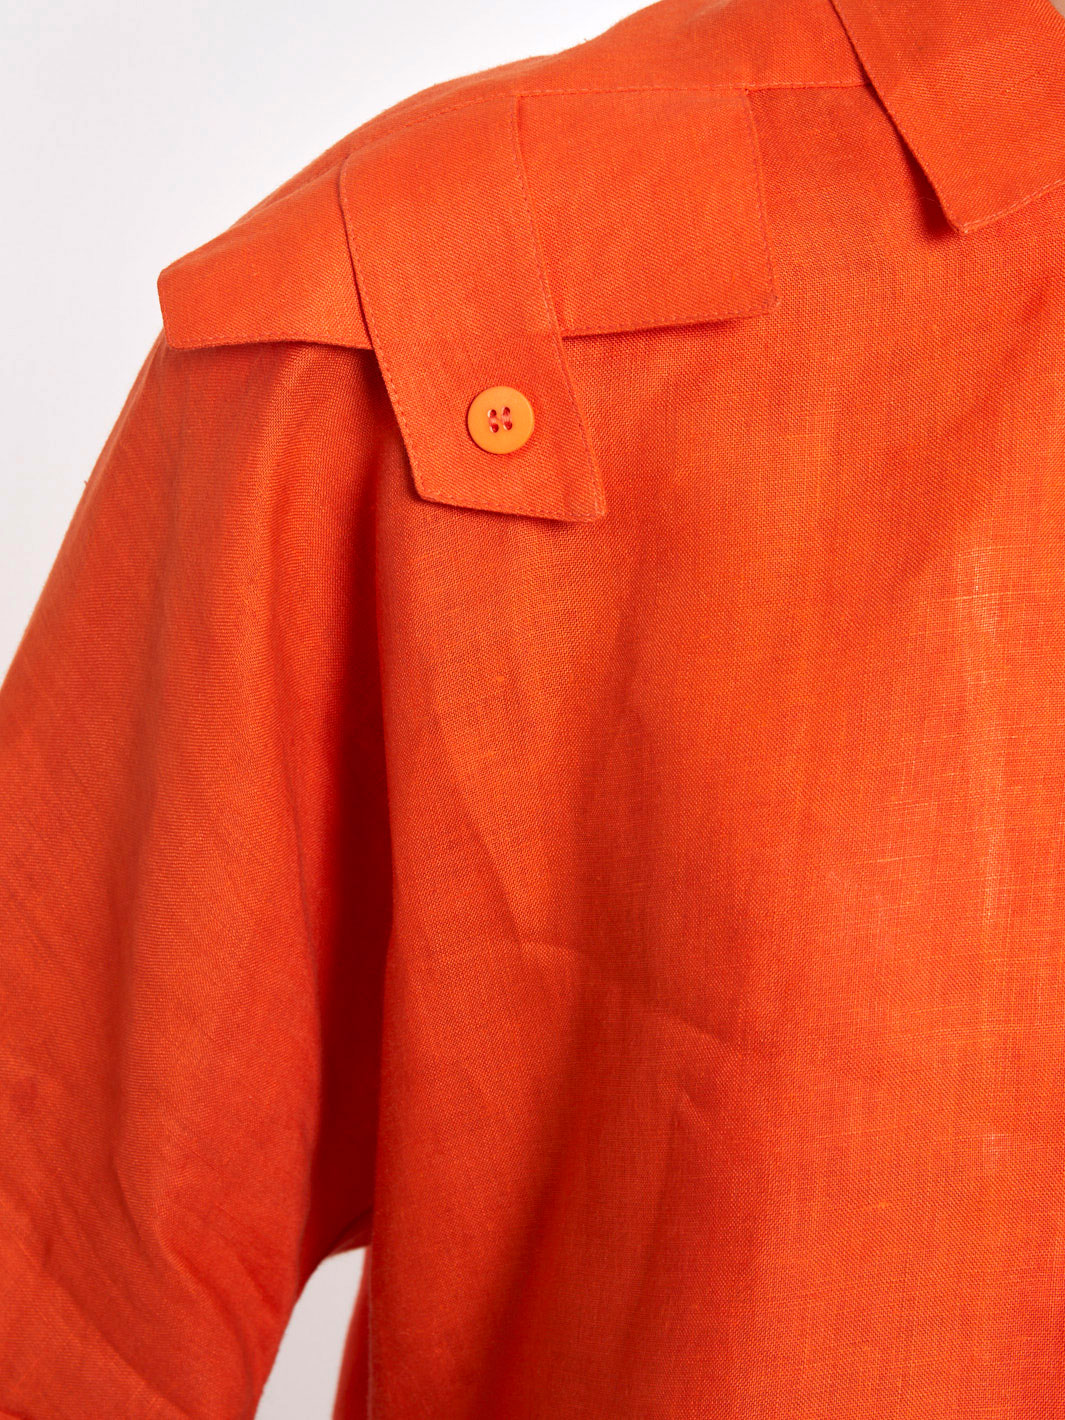 1980s Byblos orange cotton women suit with large pockets